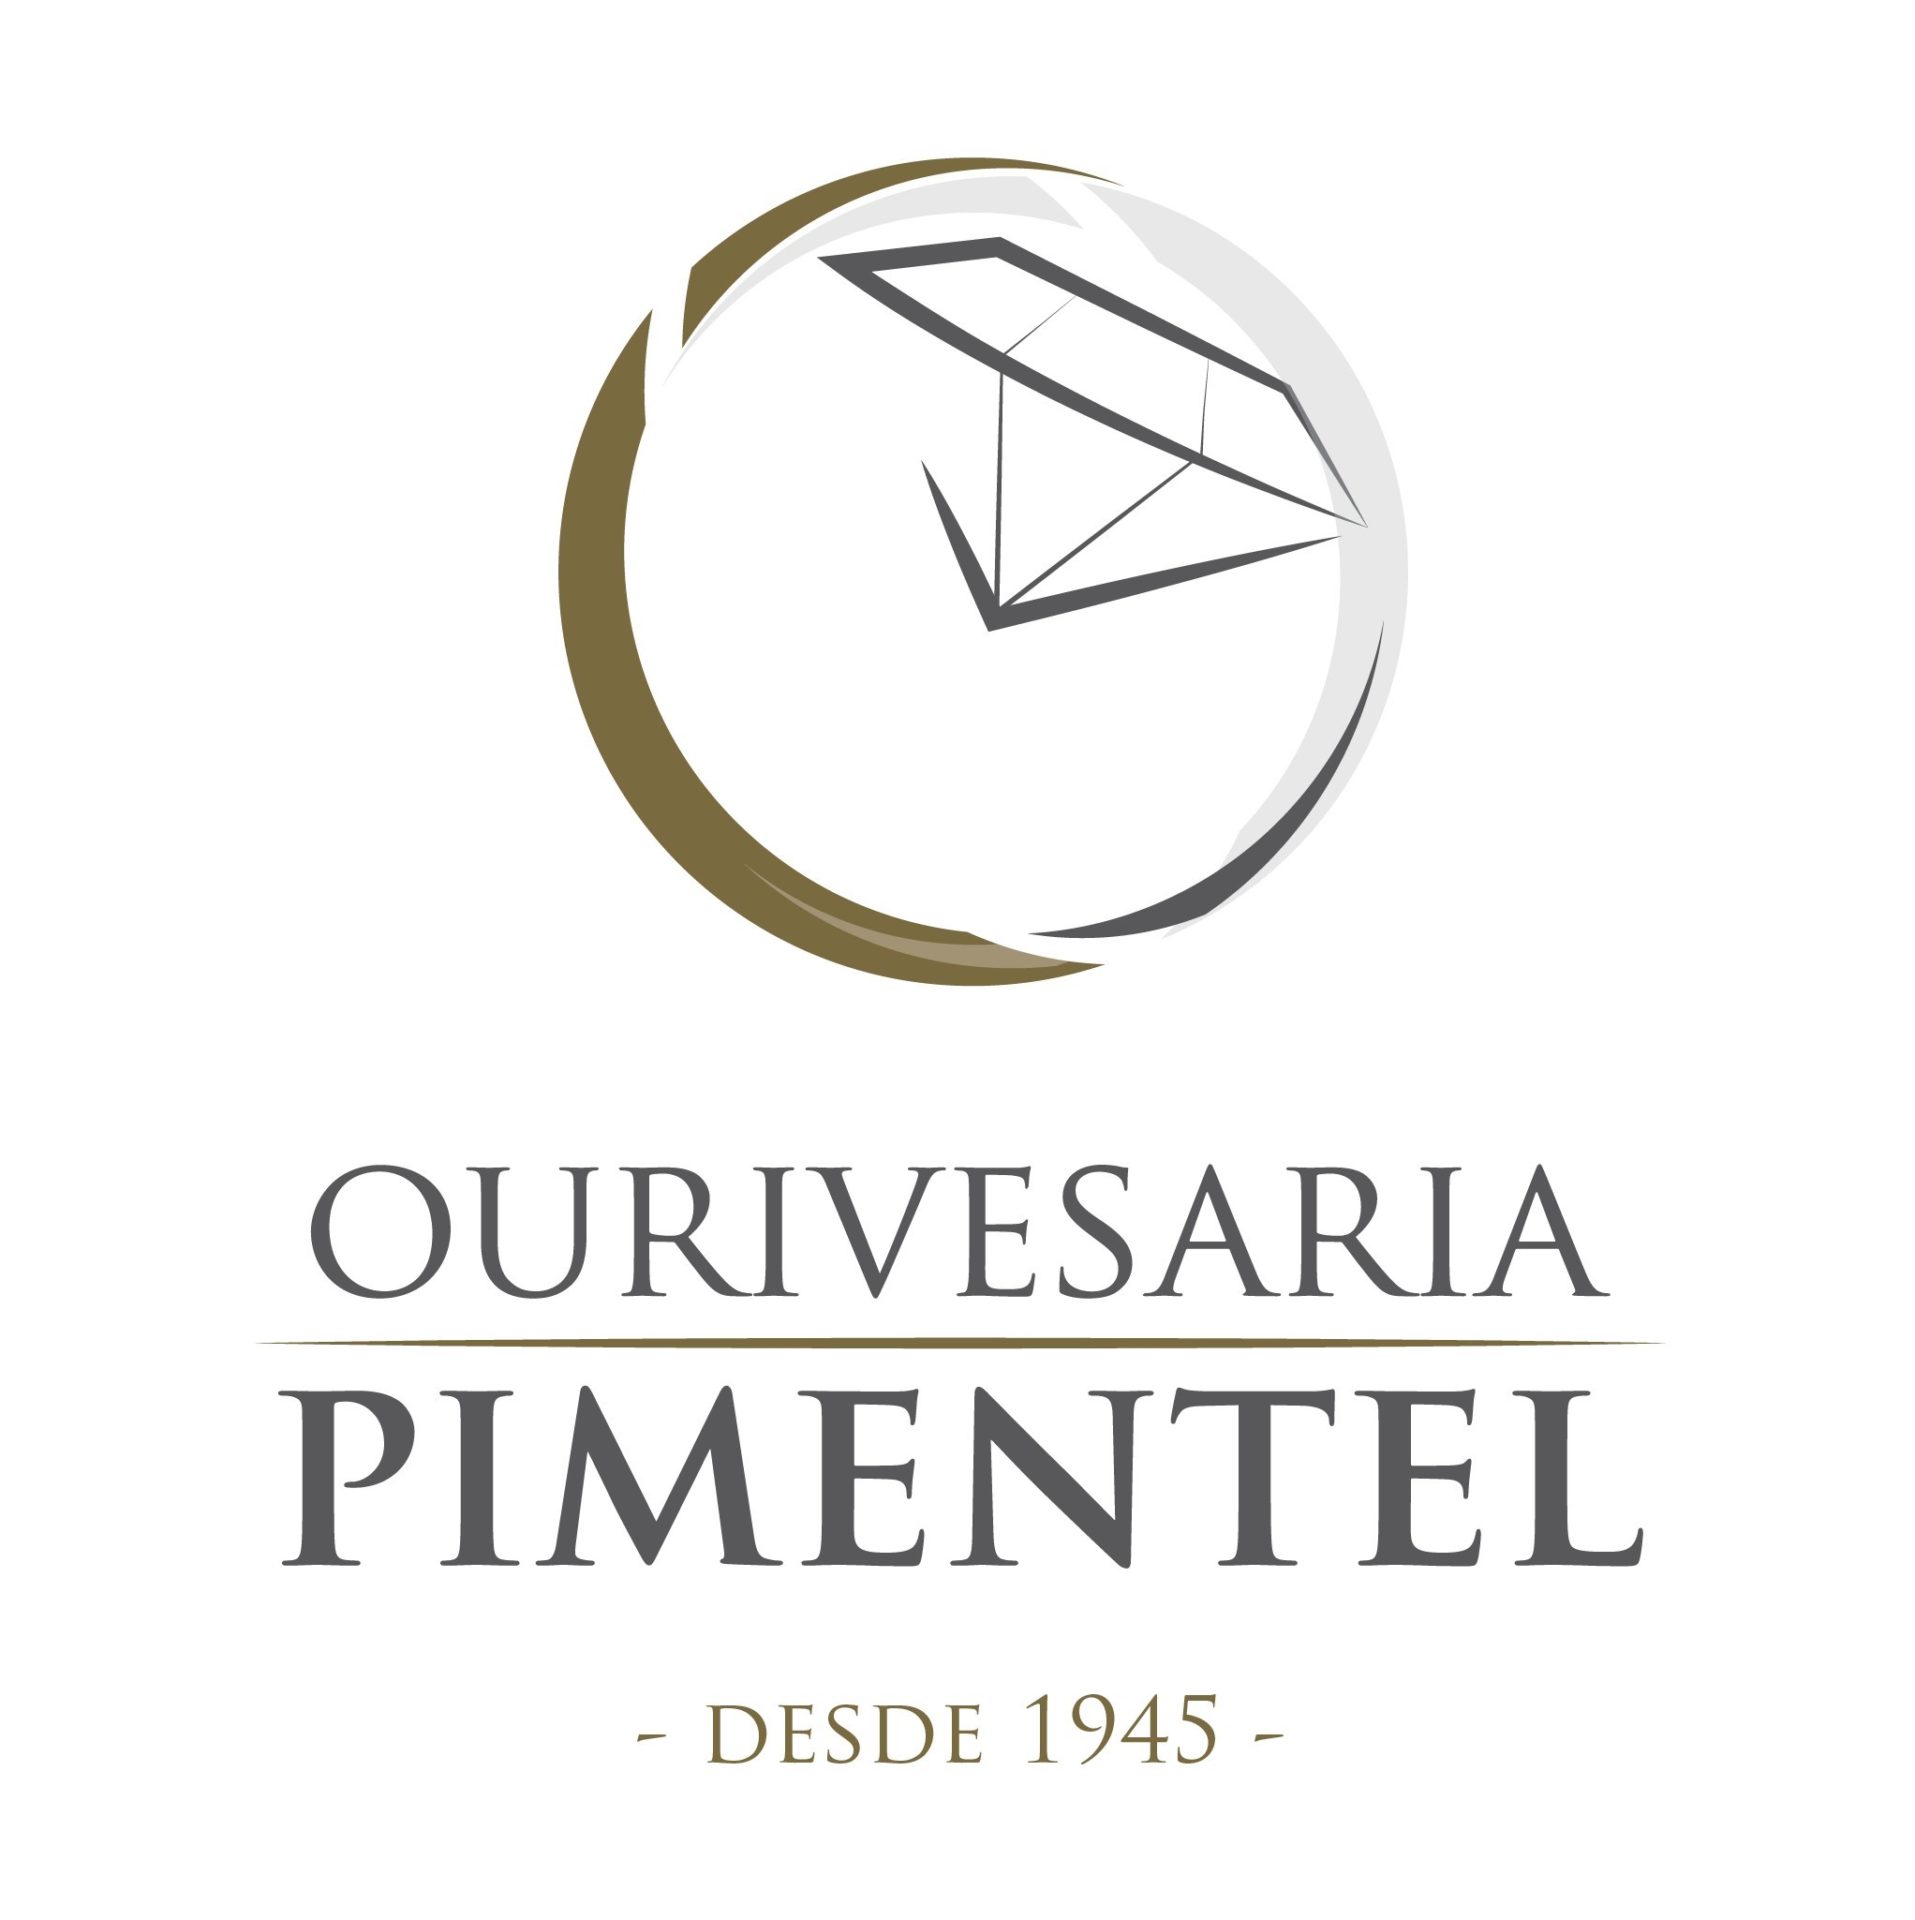 Ourivesaria Pimentel - Logo desde 1945 Cor